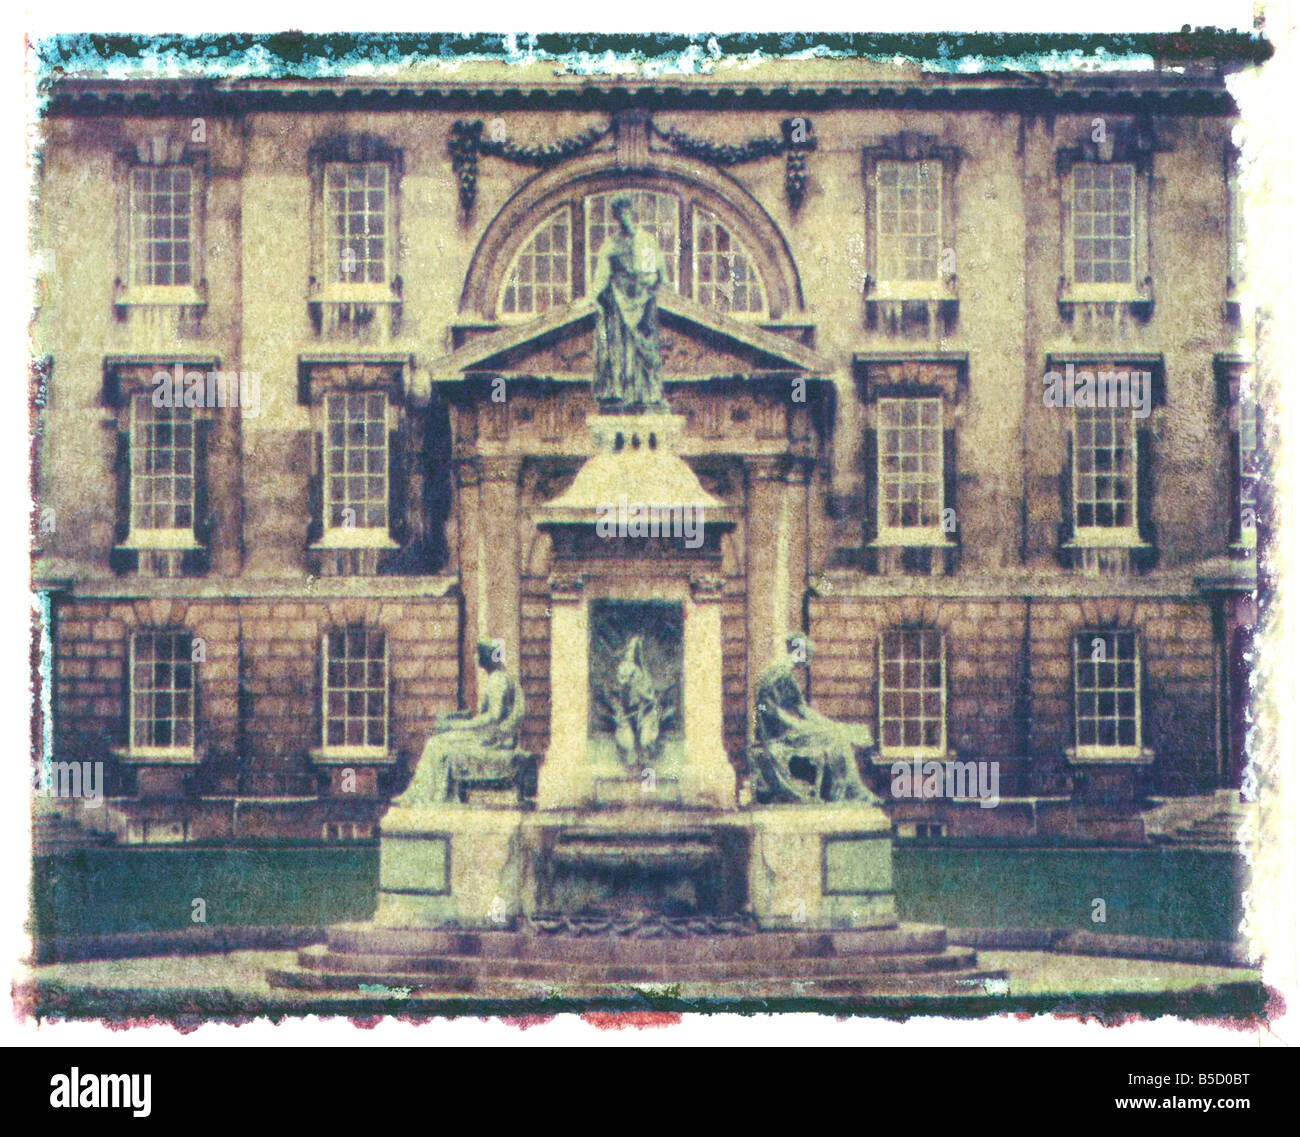 Polaroid Image Transfer der Gründer Statue König s College Cambridge Cambridgeshire England Großbritannien Europe Stockfoto